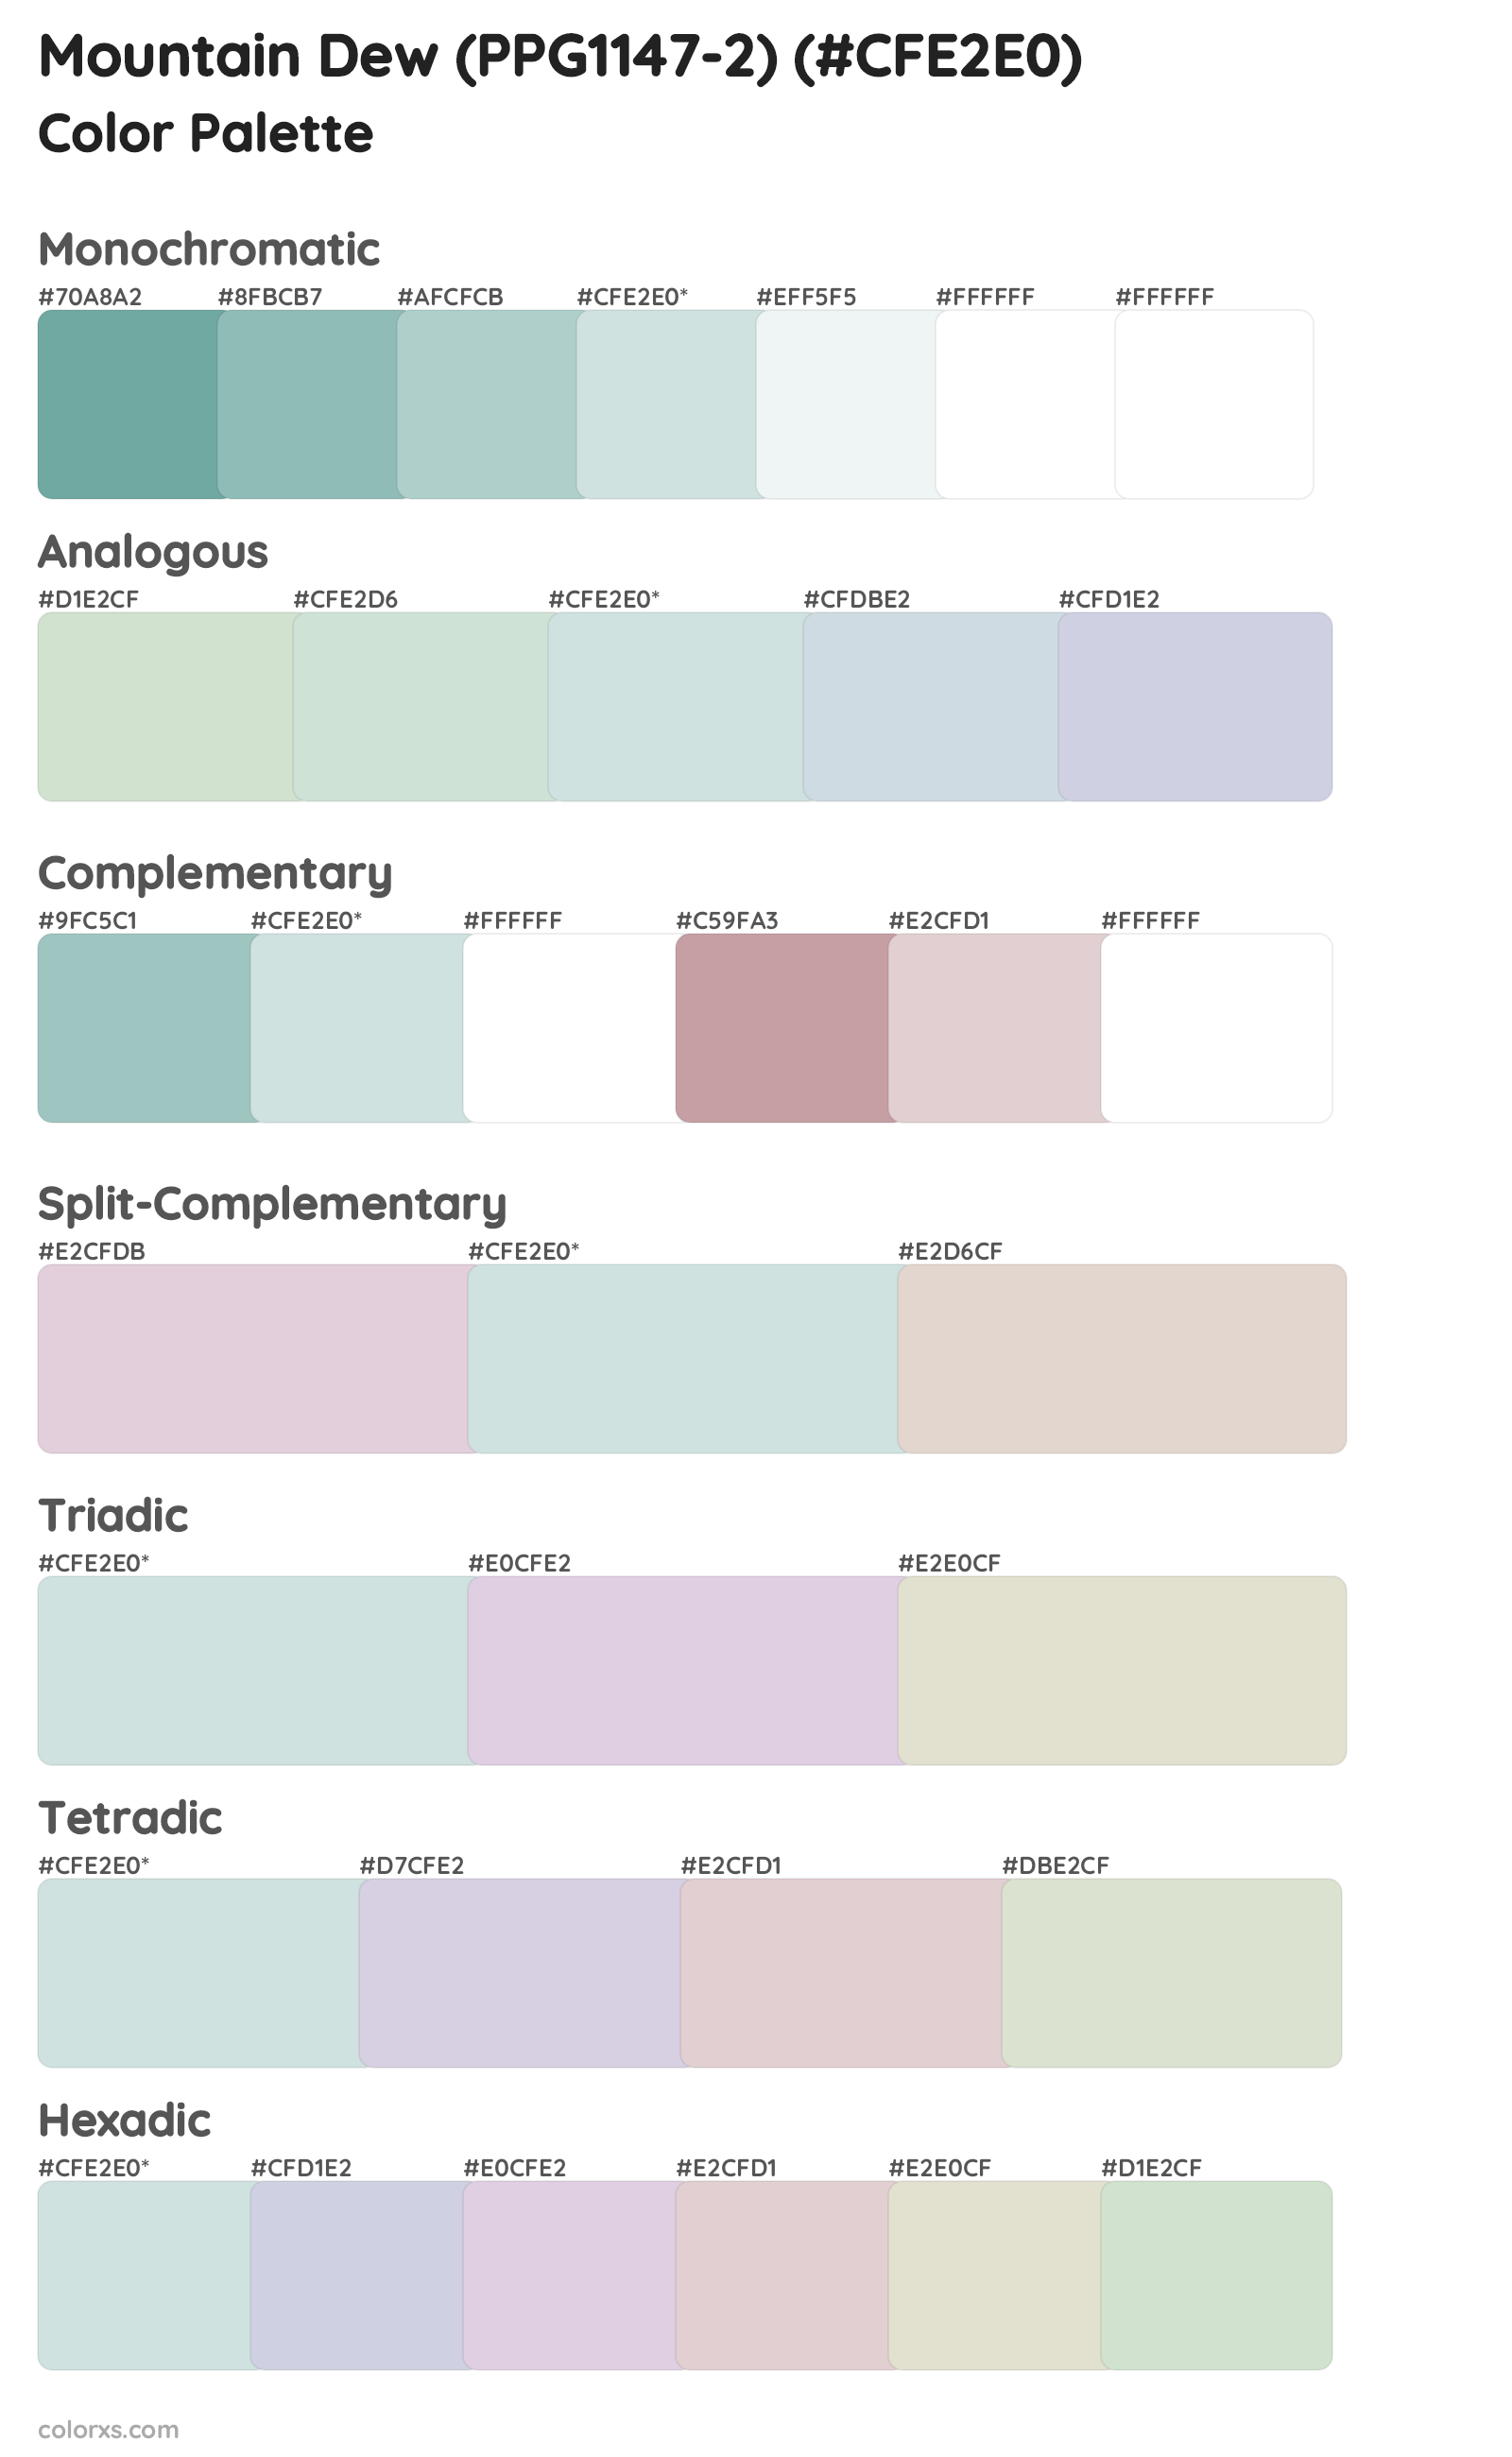 Mountain Dew (PPG1147-2) Color Scheme Palettes